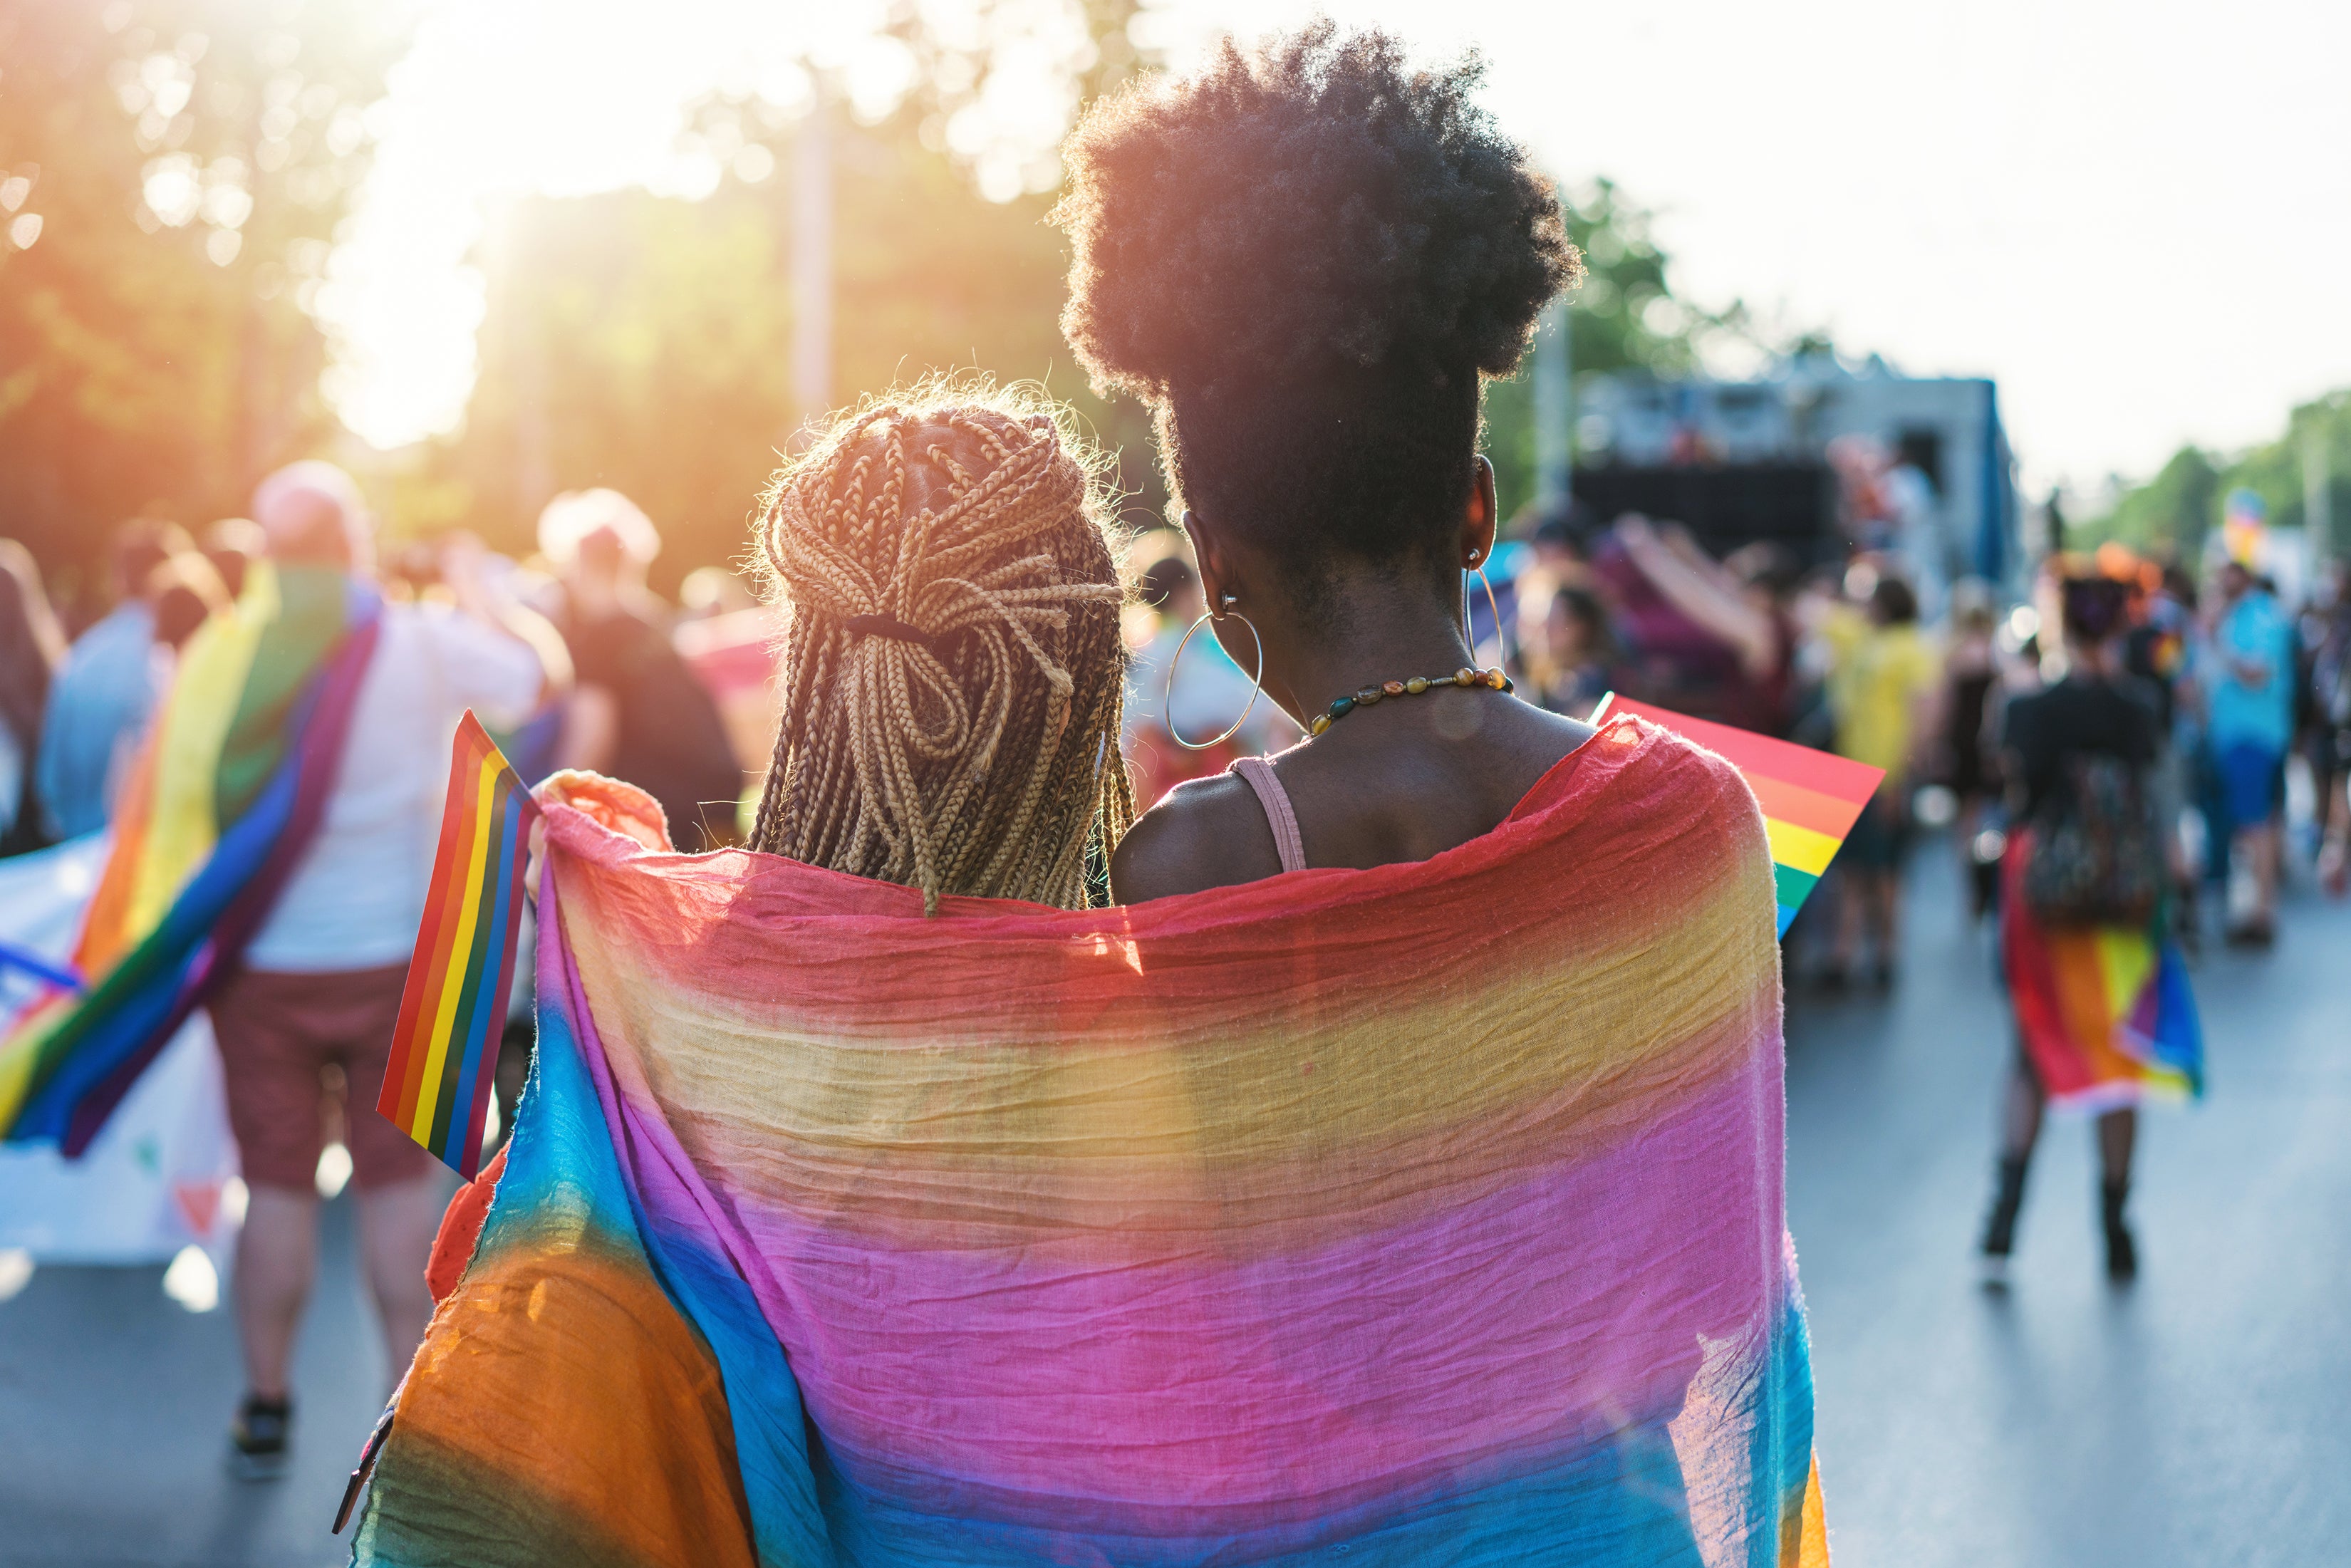 LGBTQ Gençlik Ruh Sağlığı Krizini Çözmek İçin Araştırmamız Daha İncelikli Olmalıdır